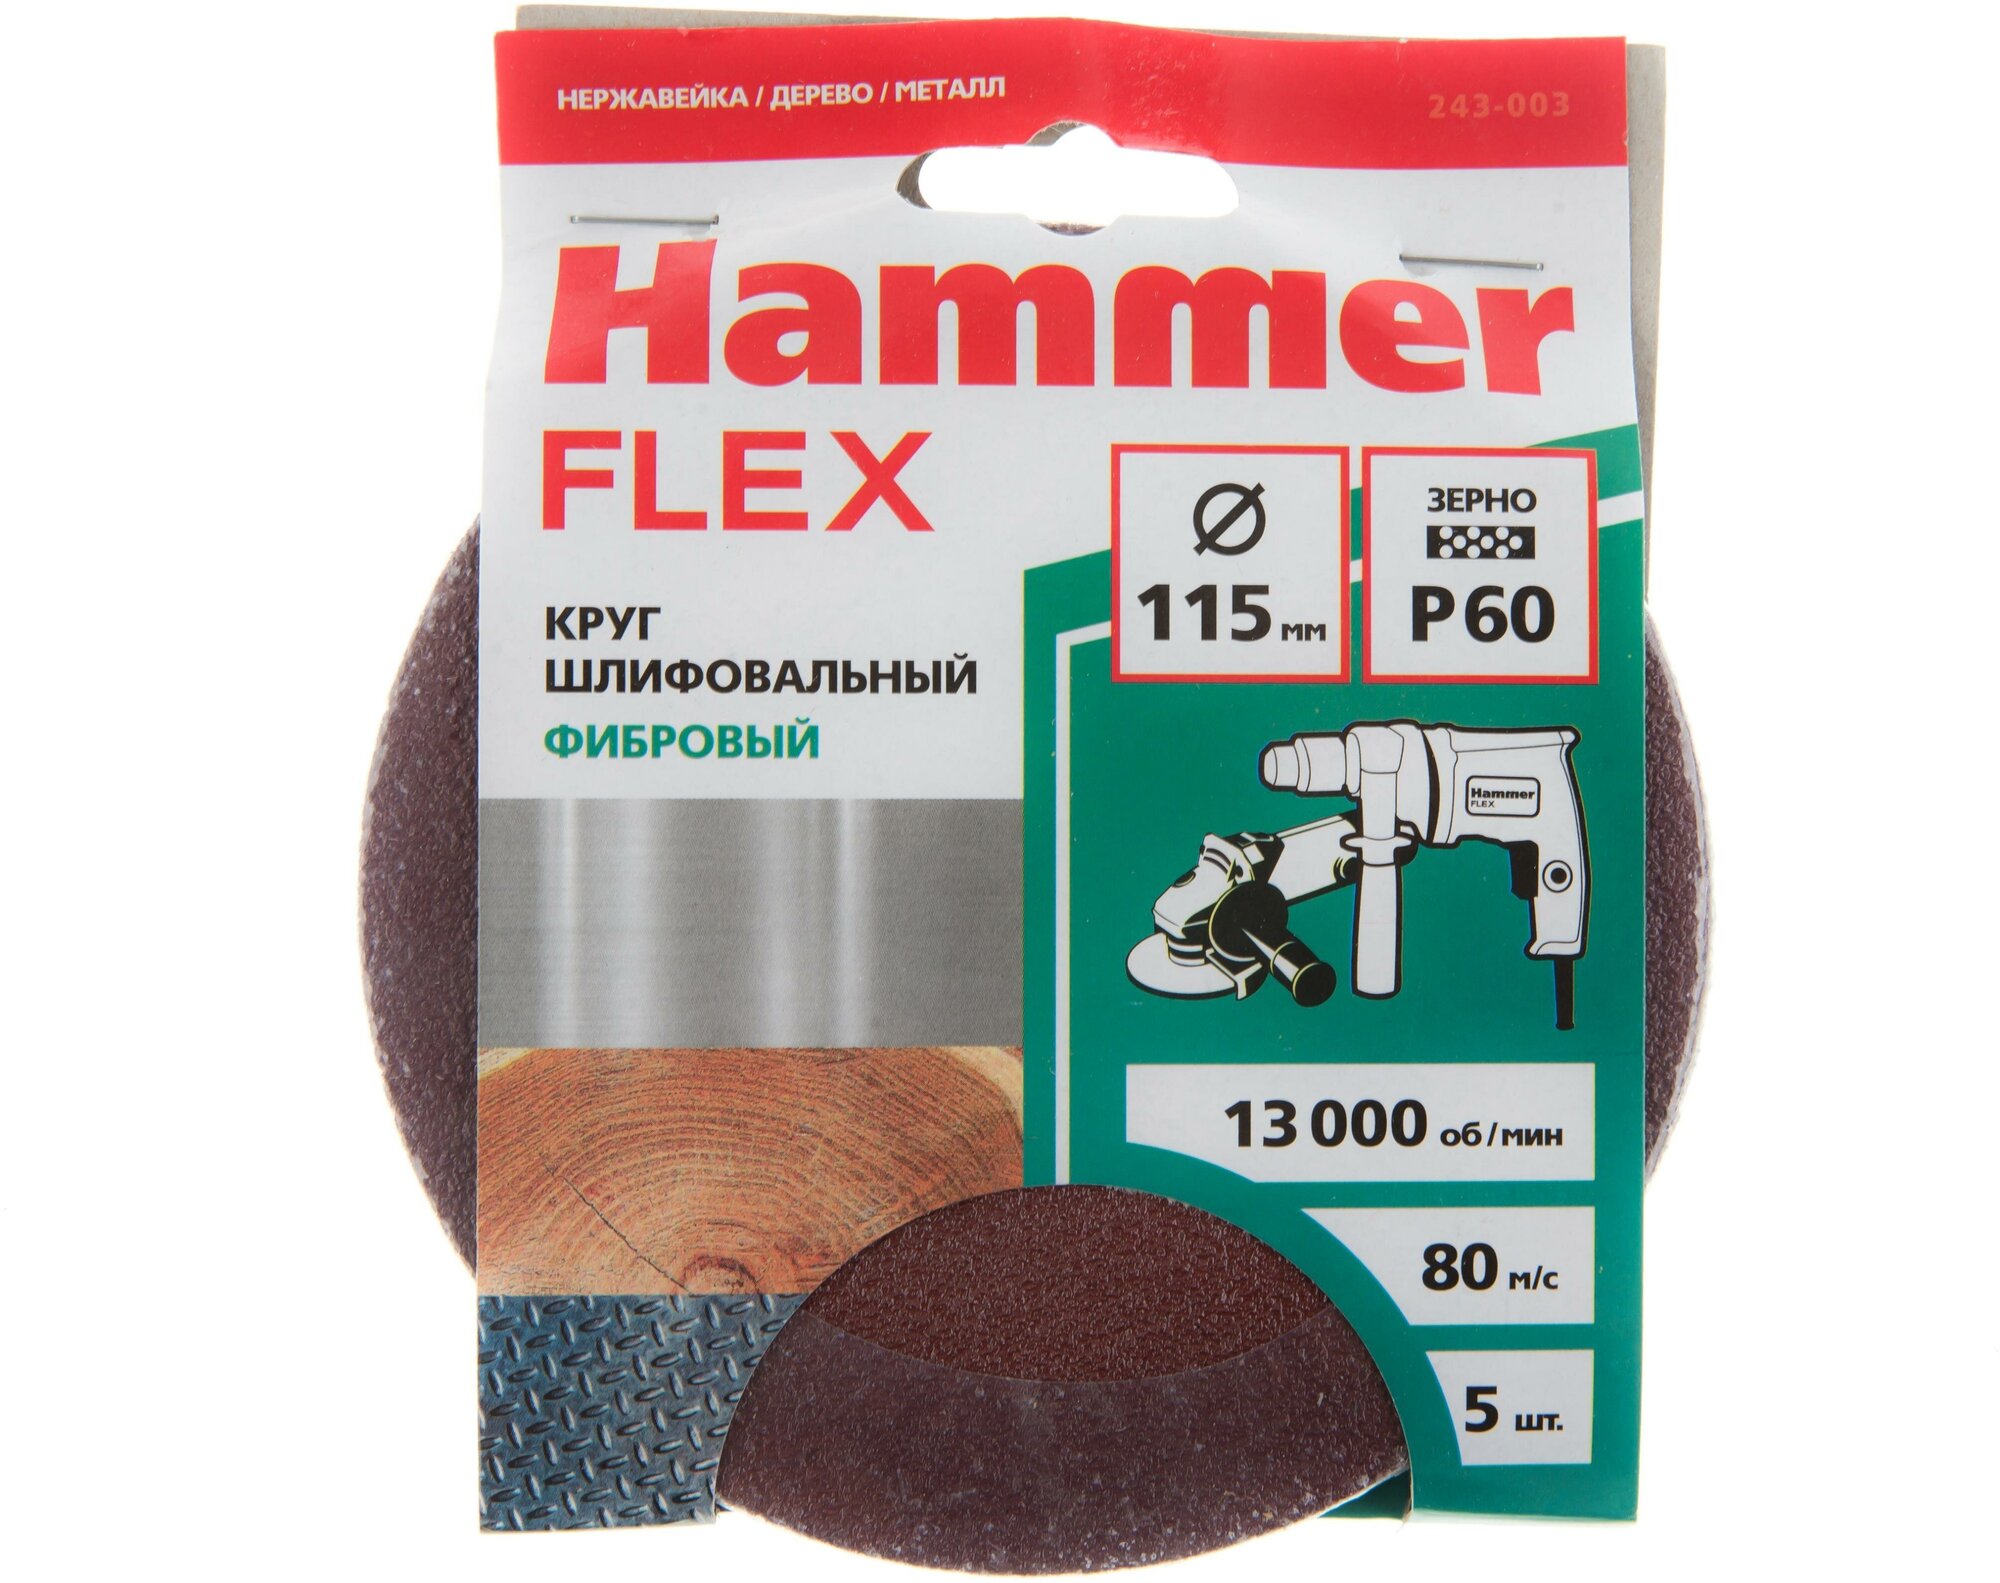 Круг шлифовальный фибровый Hammer Flex 243-003, 115мм, P60, 13000 об/мин, 80м/с (5шт)